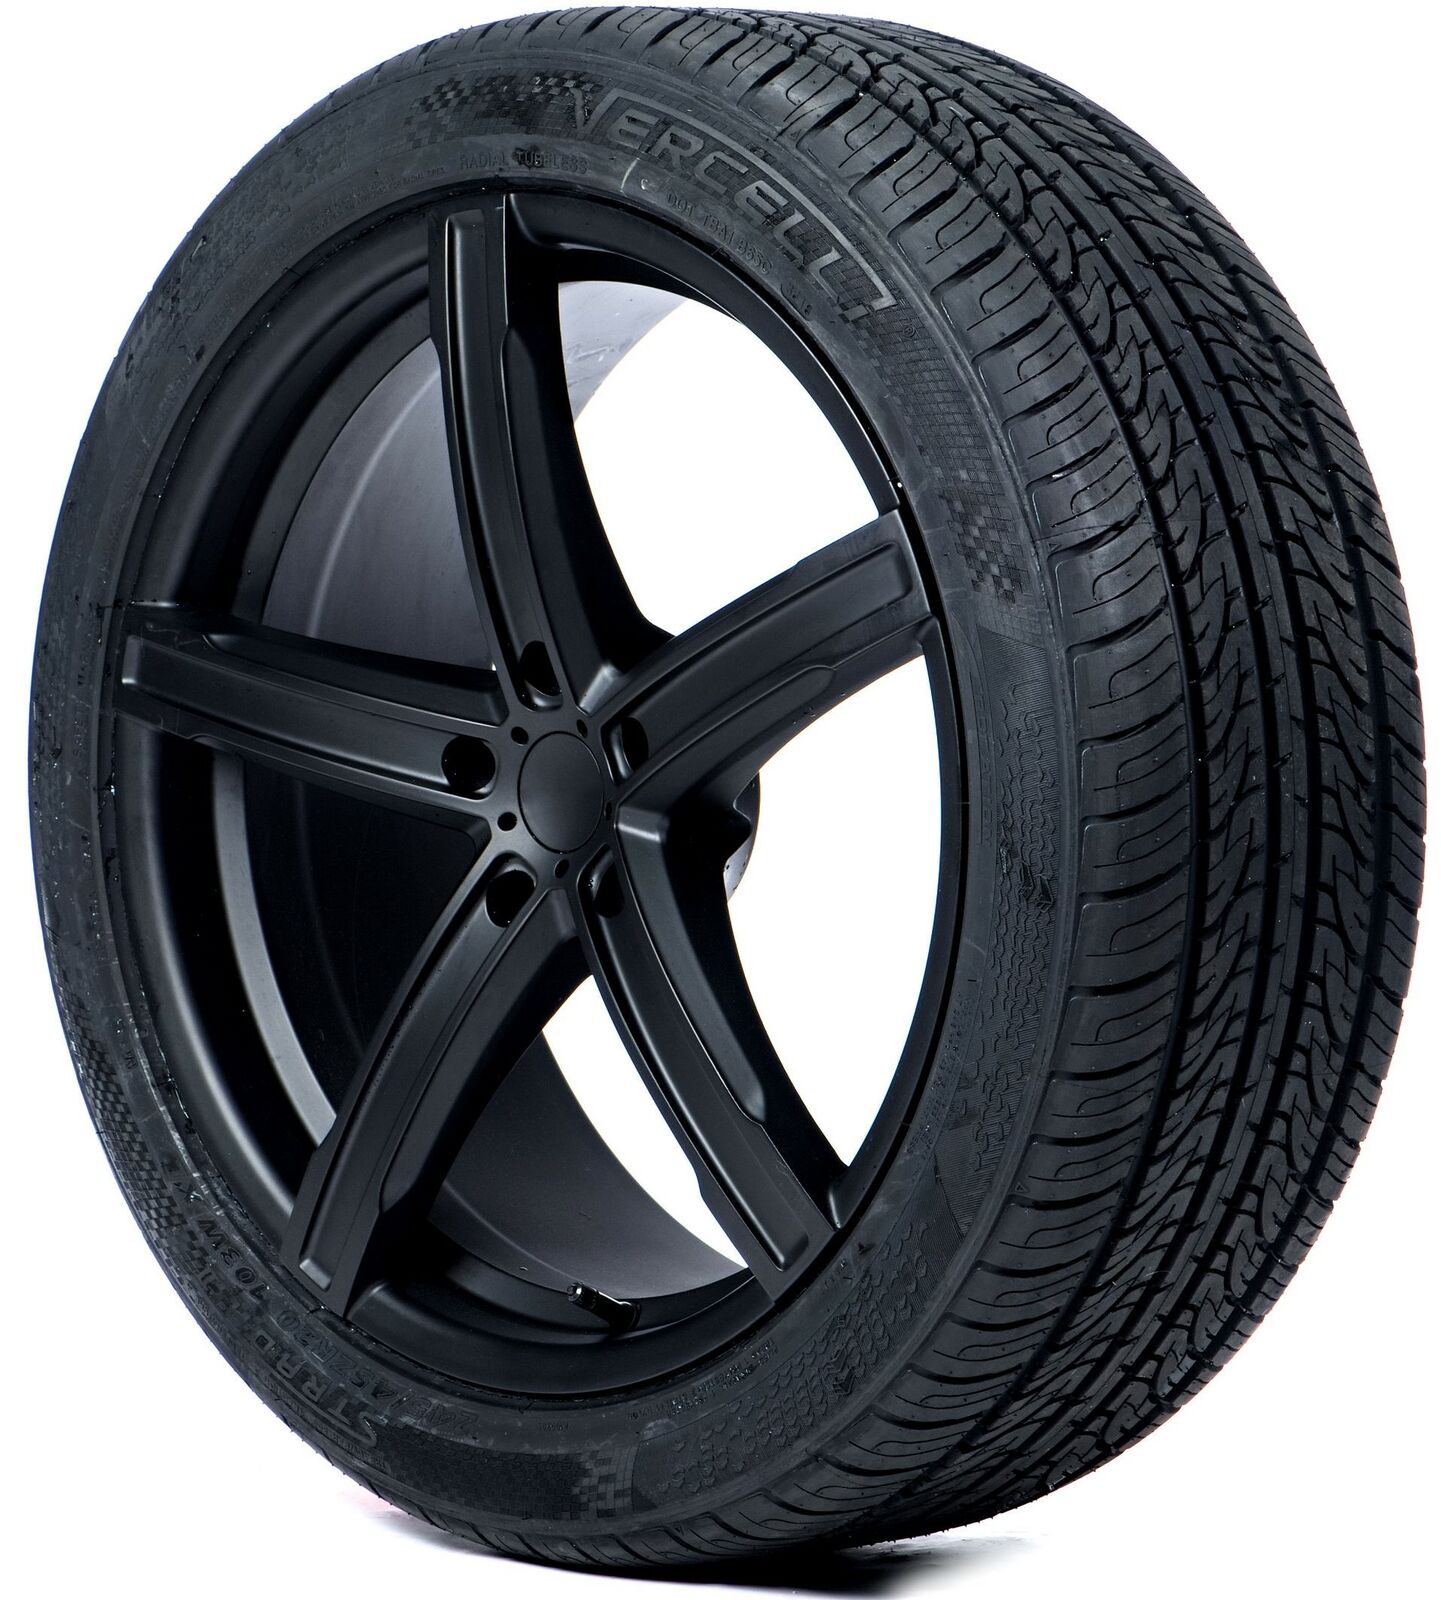 2 New Vercelli Strada 2 All-Season Tires - 275/35R18 99W 275 35 R18